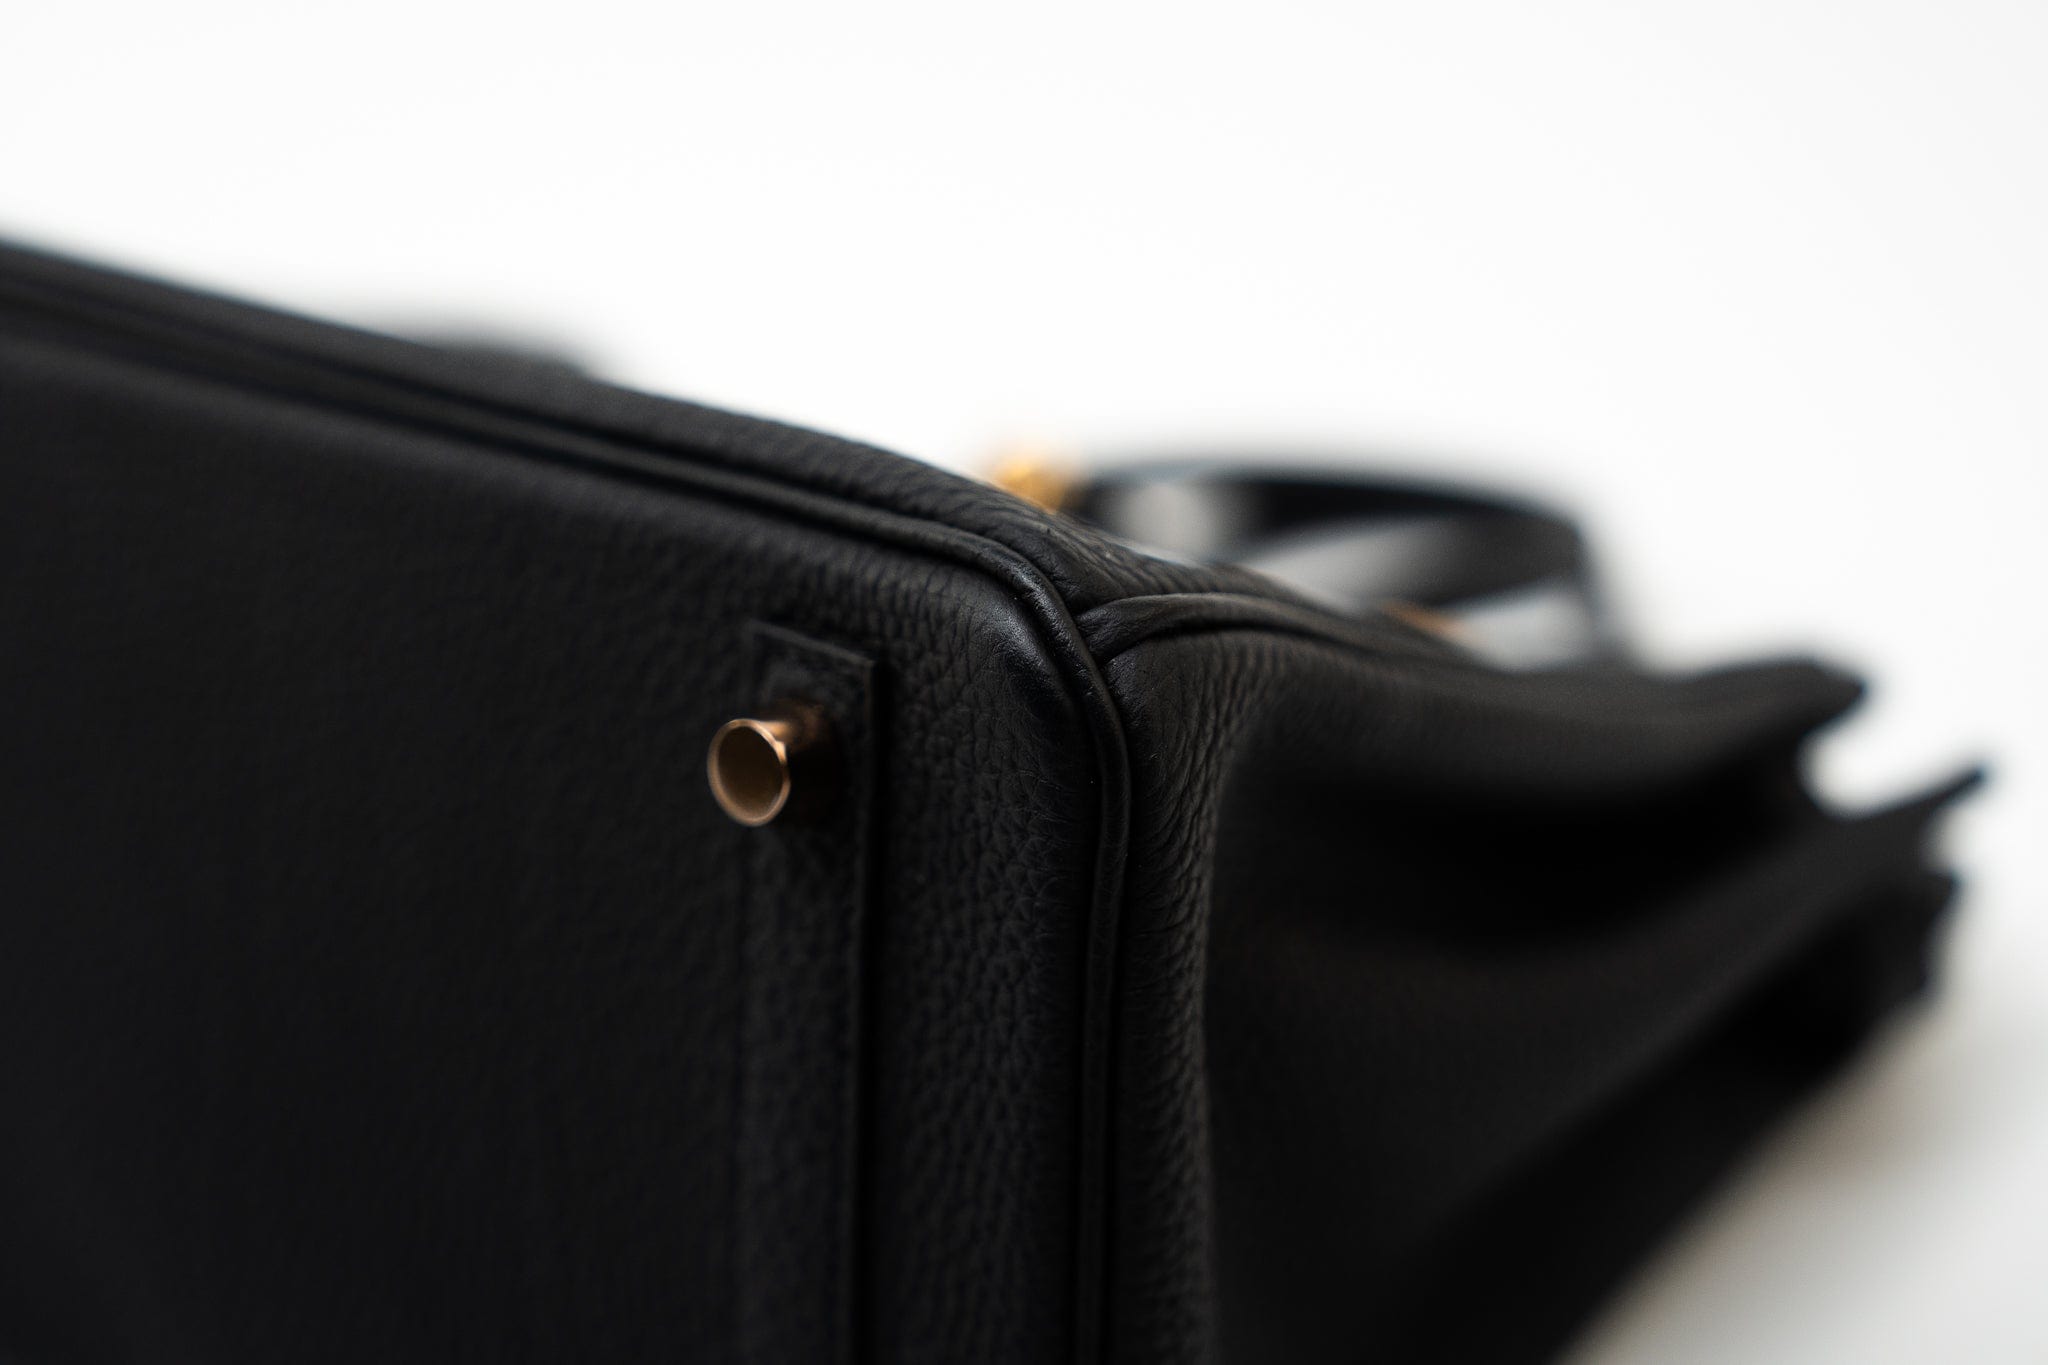 Hermes Handbag Birkin 25 Black Veau Togo Leather Rose Gold Hardware Z Stamp - Redeluxe